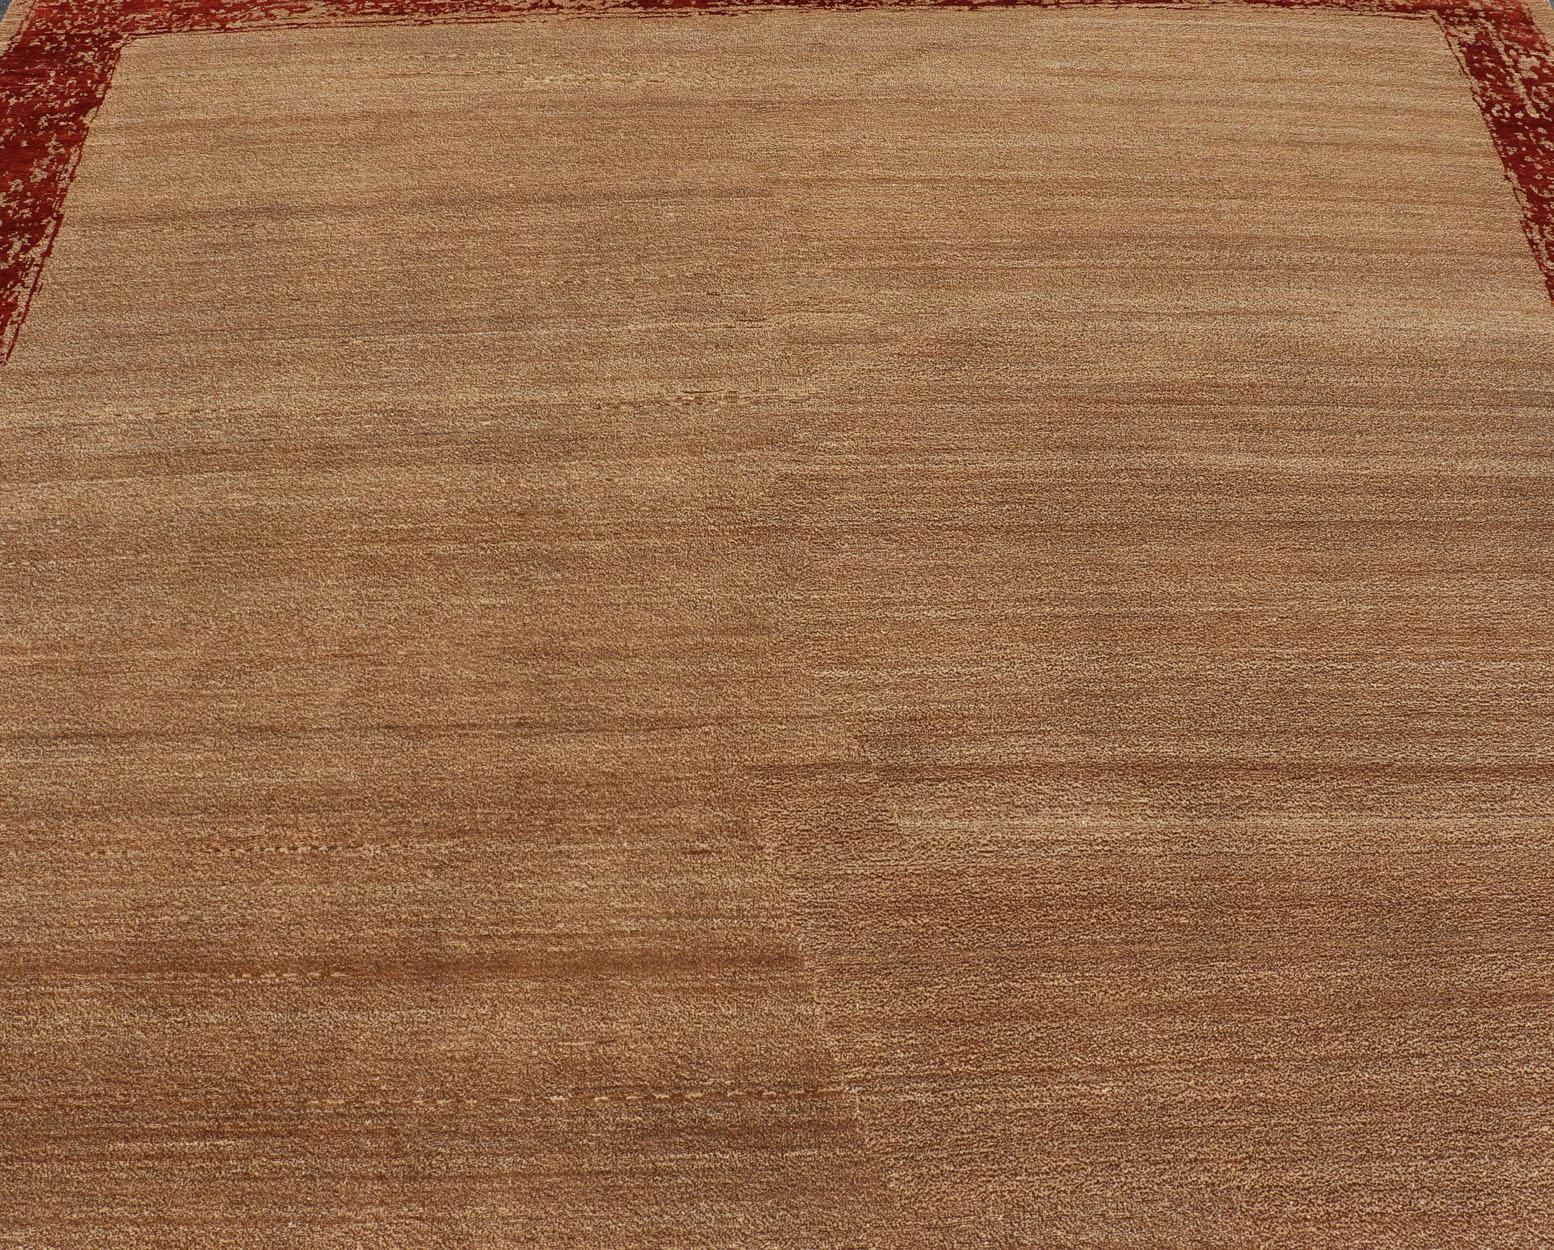 Keivan Woven Arts Moderner Florteppich mit hellbraunem Hintergrund und verschiedenen roten Akzent- und Bordürenfarben. Keivan Woven Arts / Teppich V21-0802, Herkunftsland / Art: Indien/ Geknüpft.

 Maße: 9 x 12'3

Dieser fein gewebte Teppich in